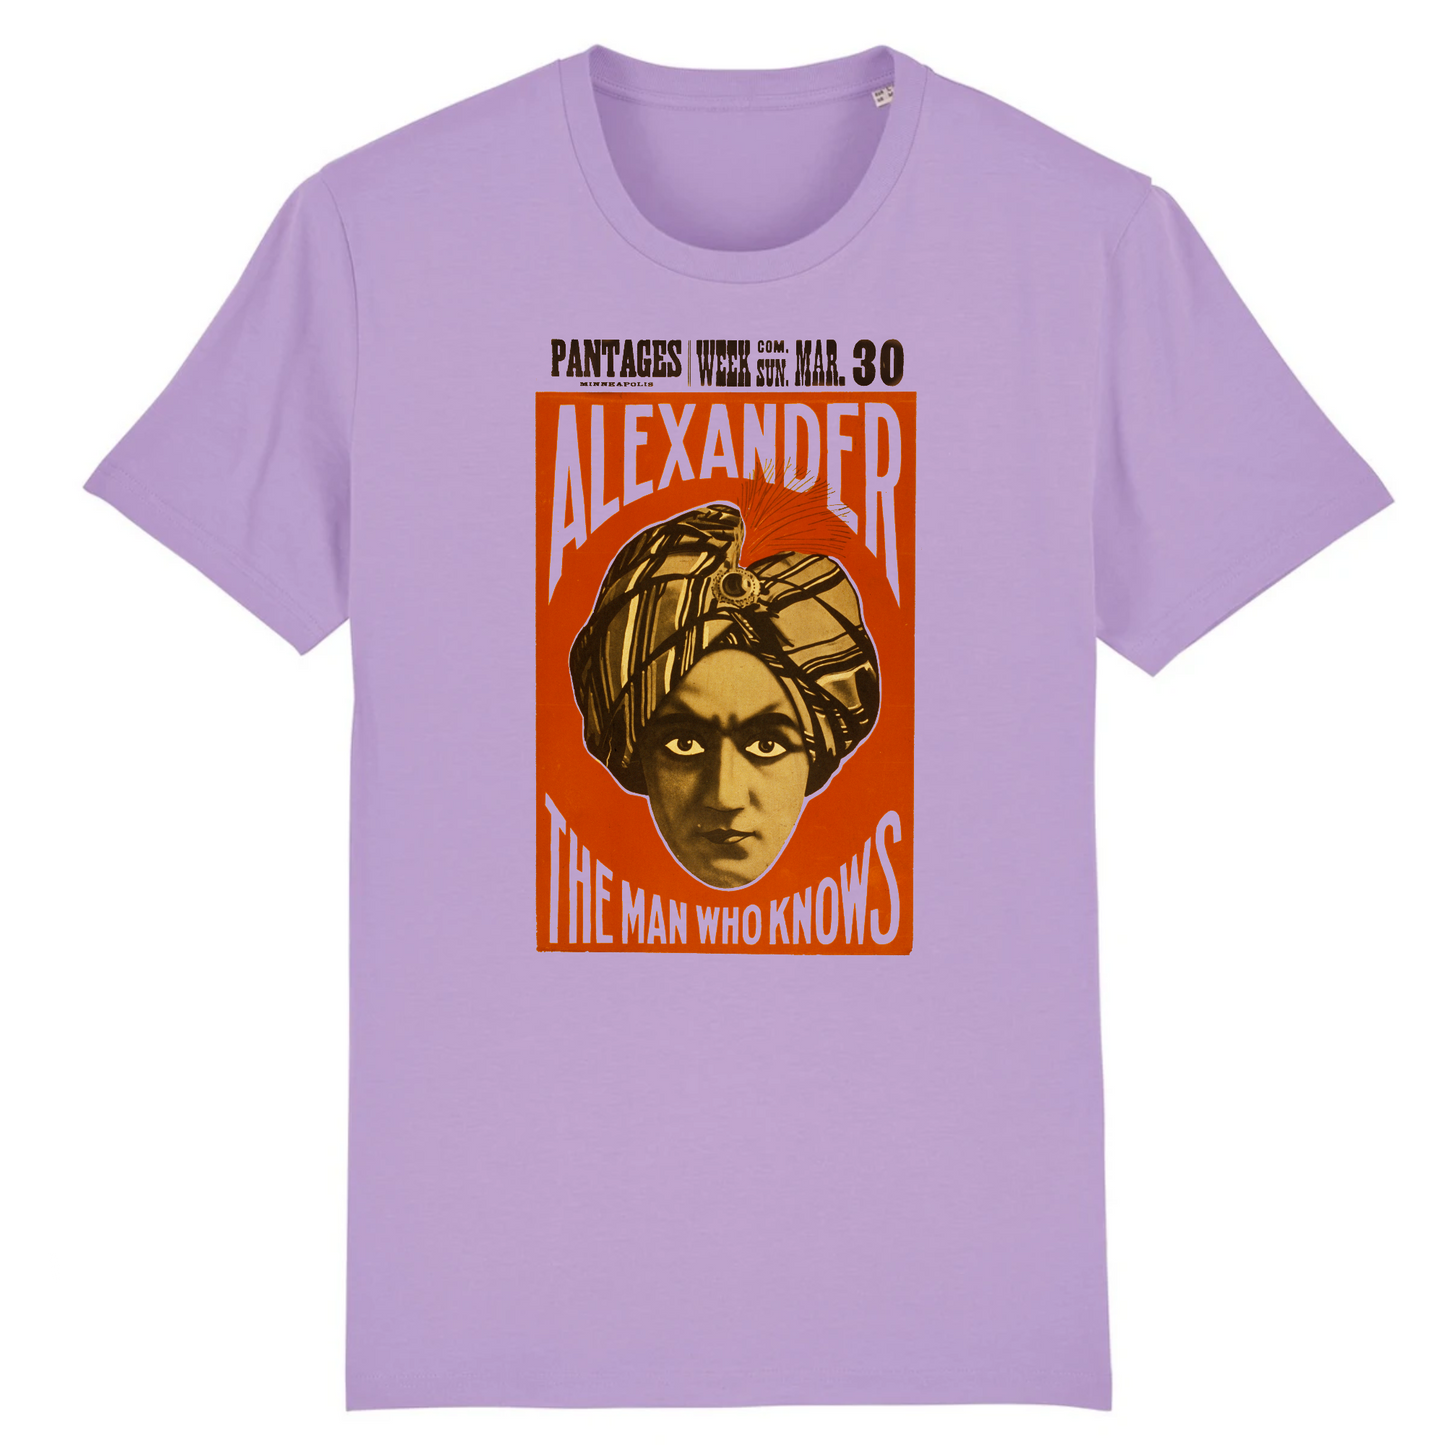 Alexander, el hombre que sabe - Camiseta de algodón orgánico